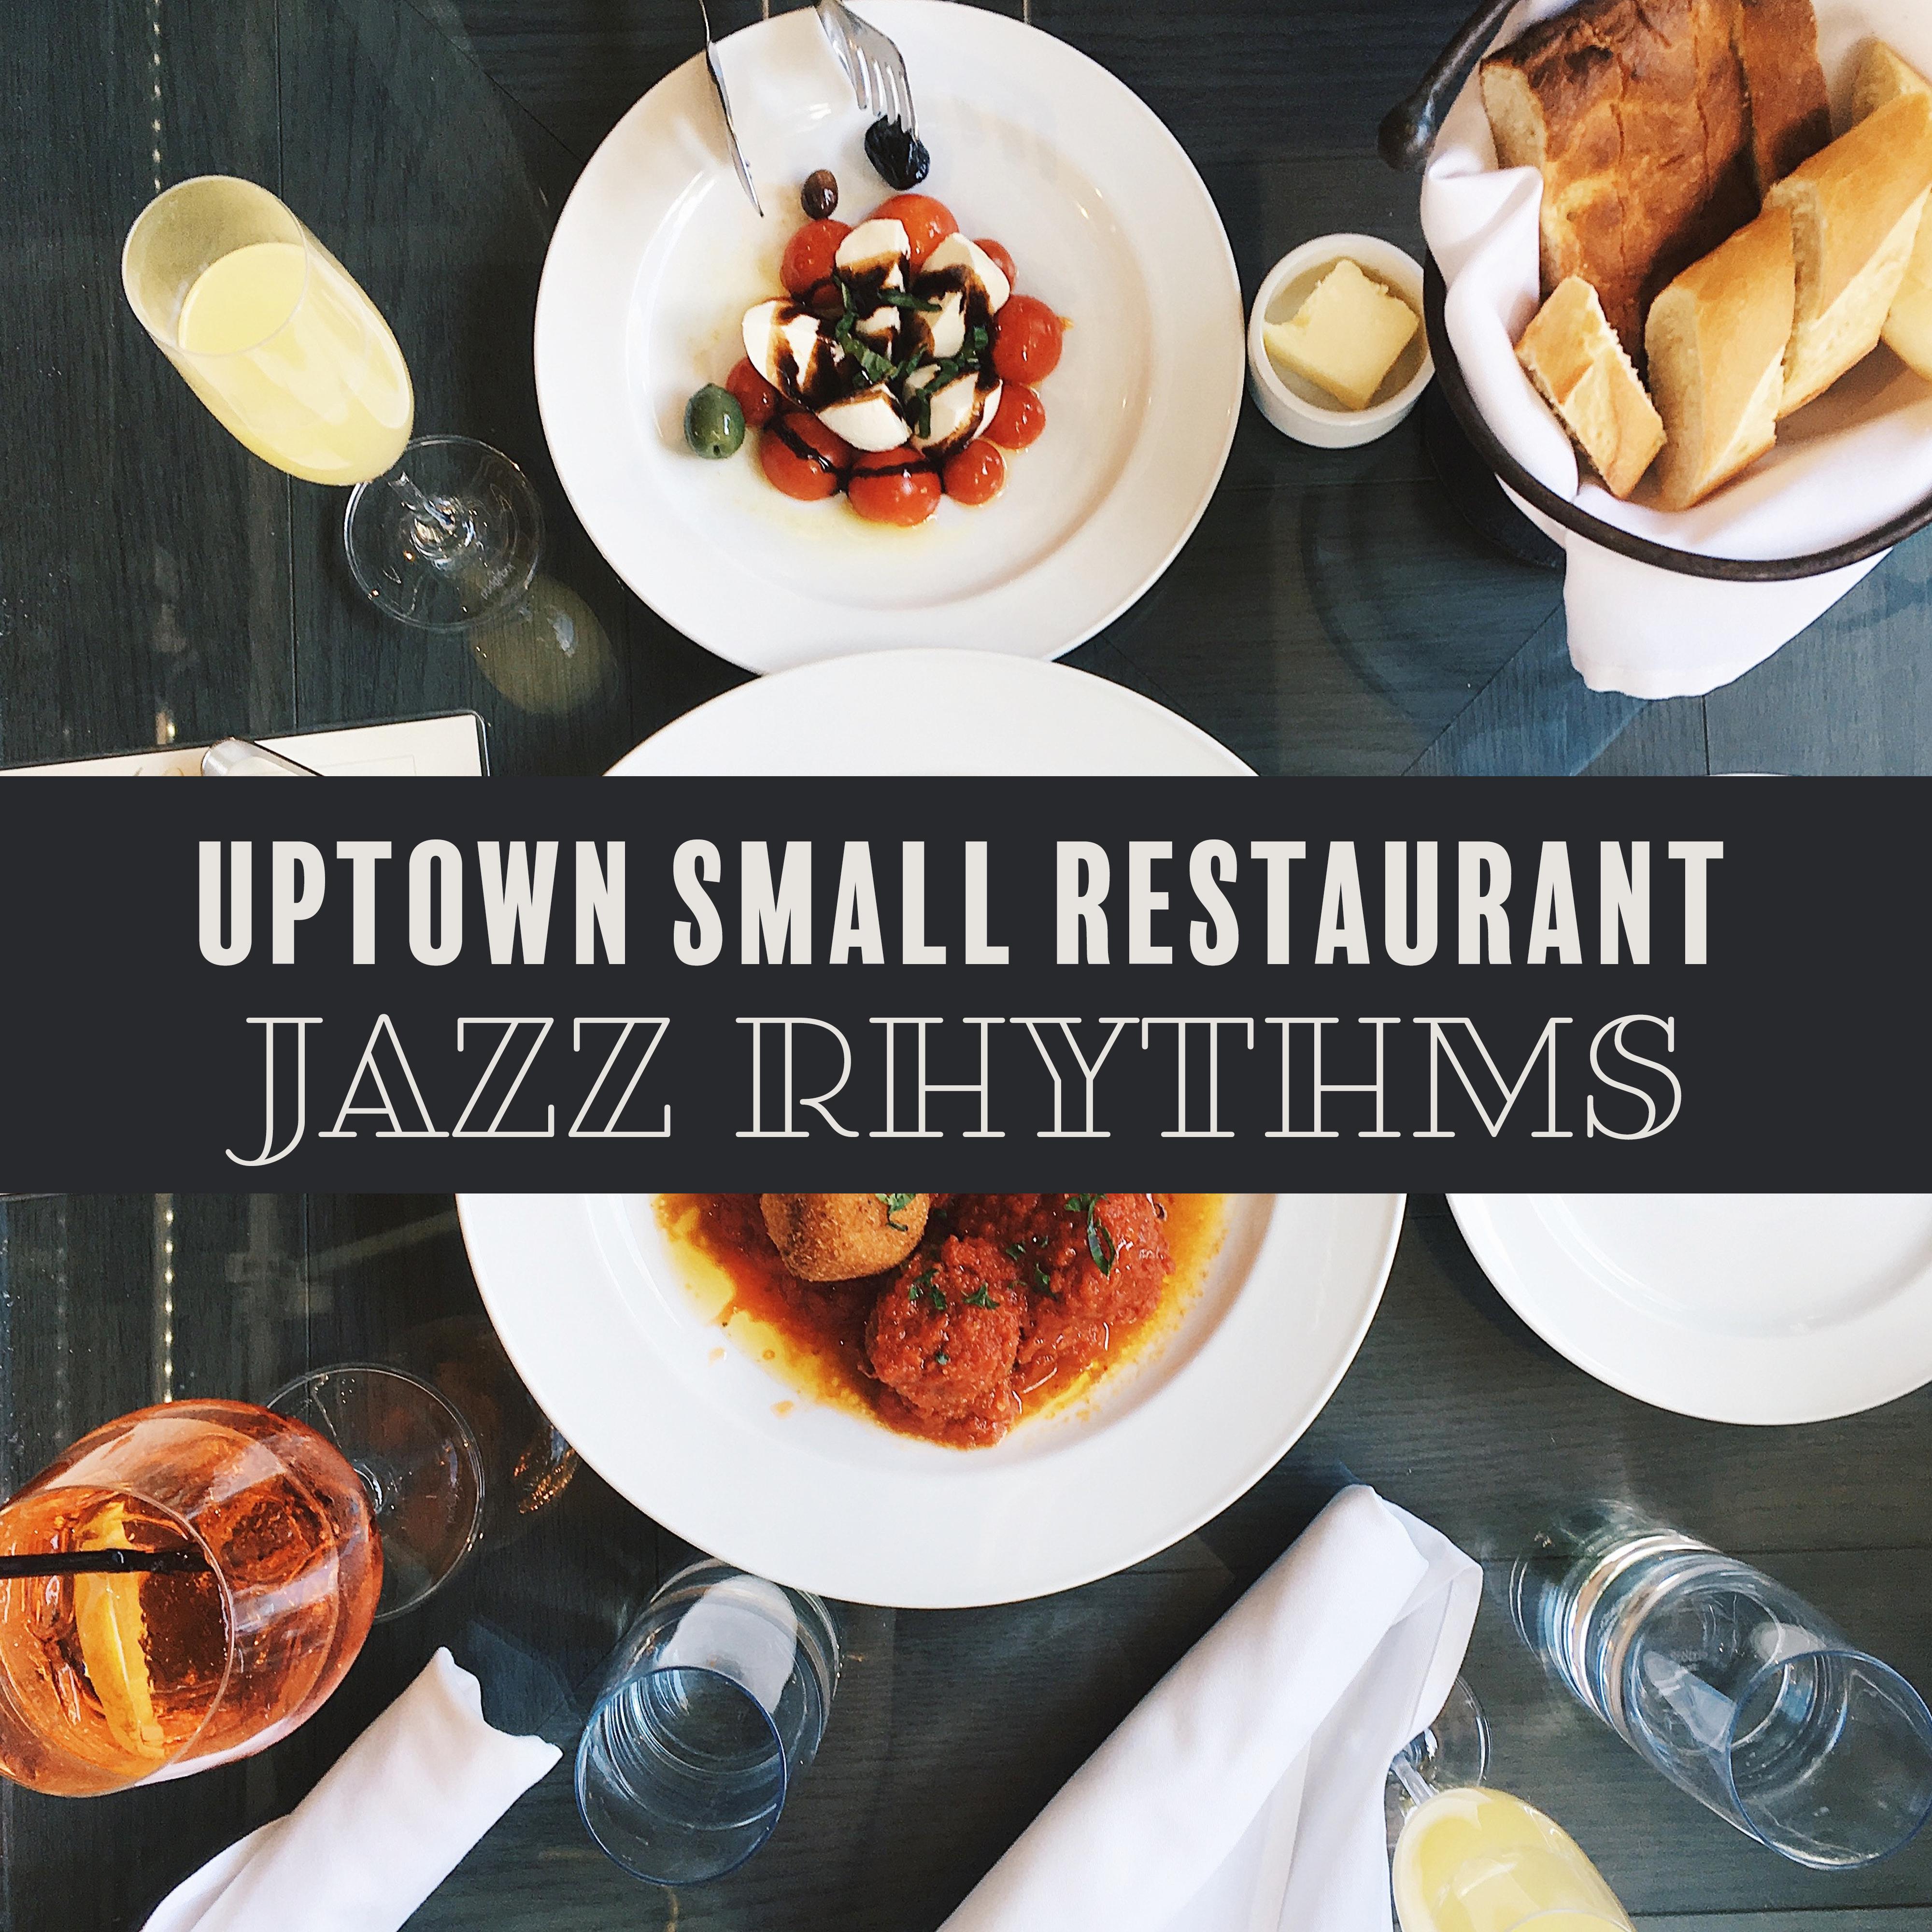 Uptown Small Restaurant Jazz Rhythms  Best Restaurant Background Jazz Music 2019